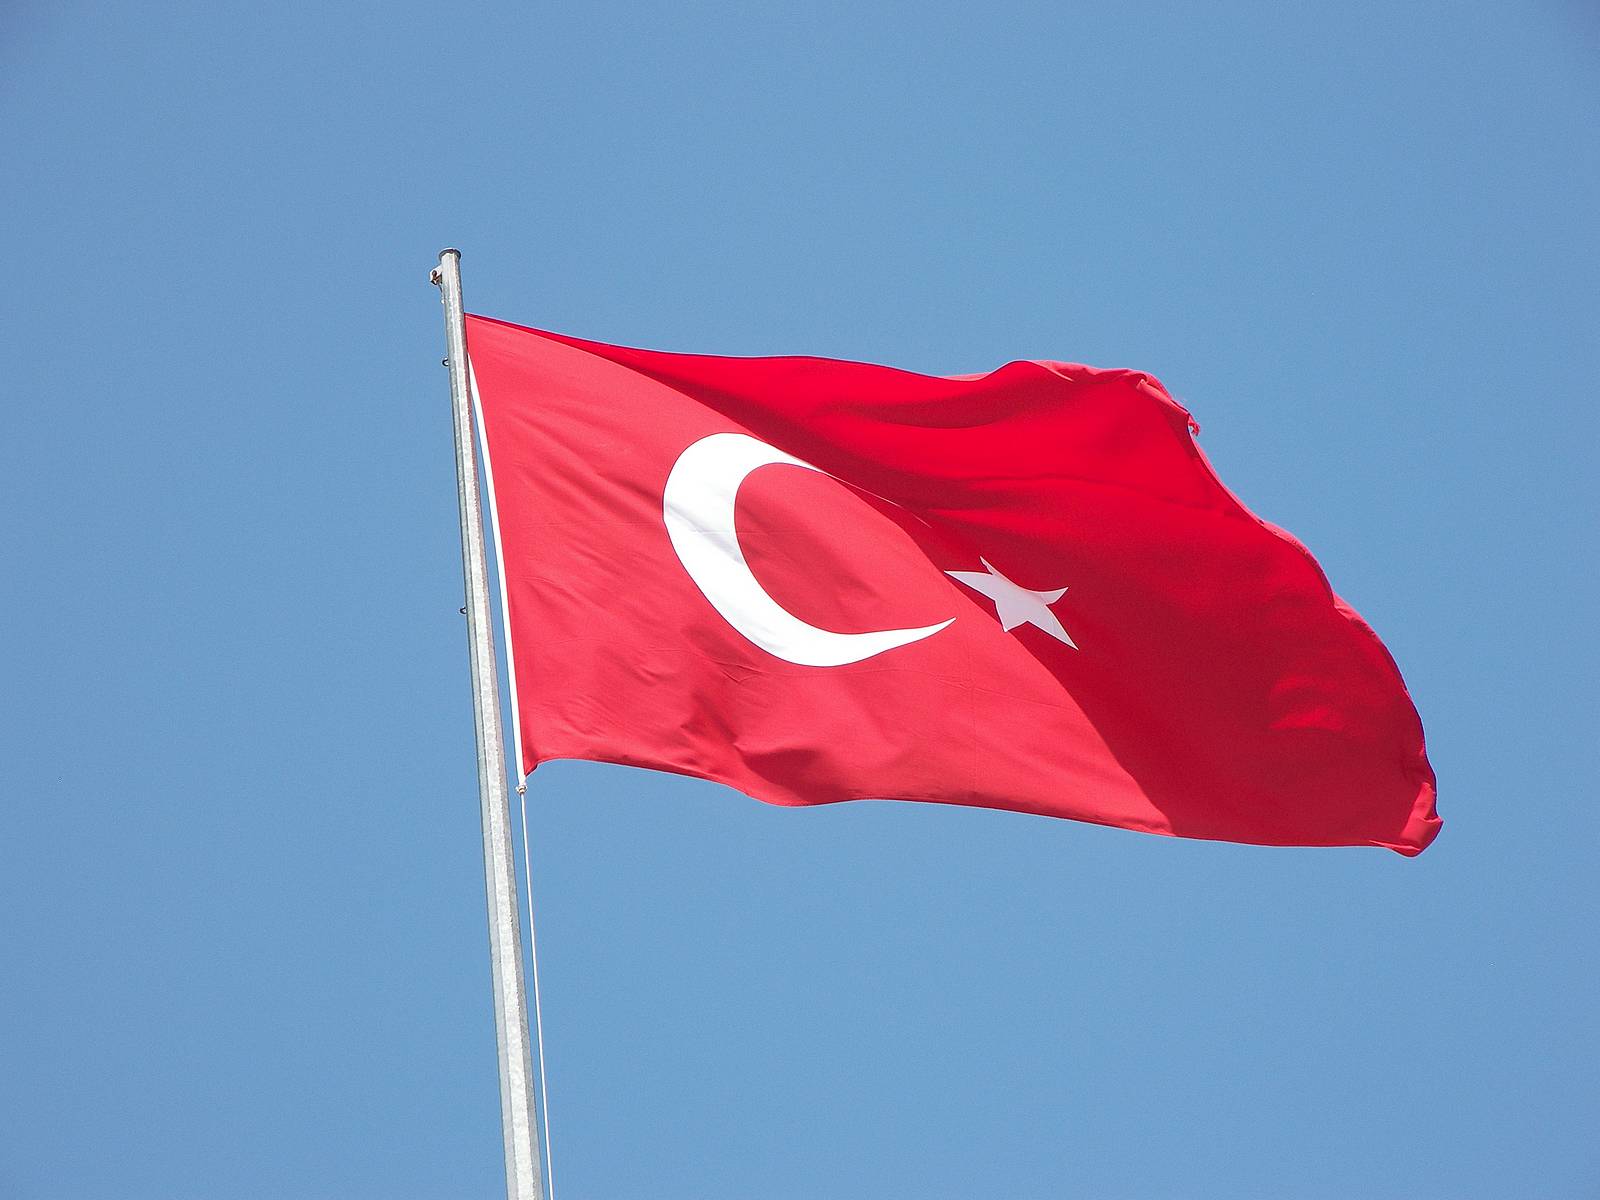 Τουρκία: «Οι διελεύσεις παράτυπων μεταναστών από το Αιγαίο δεν επιτρέπονται» – Στις Βρυξέλλες τη Δευτέρα ο Ρ.Τ.Ερντογάν